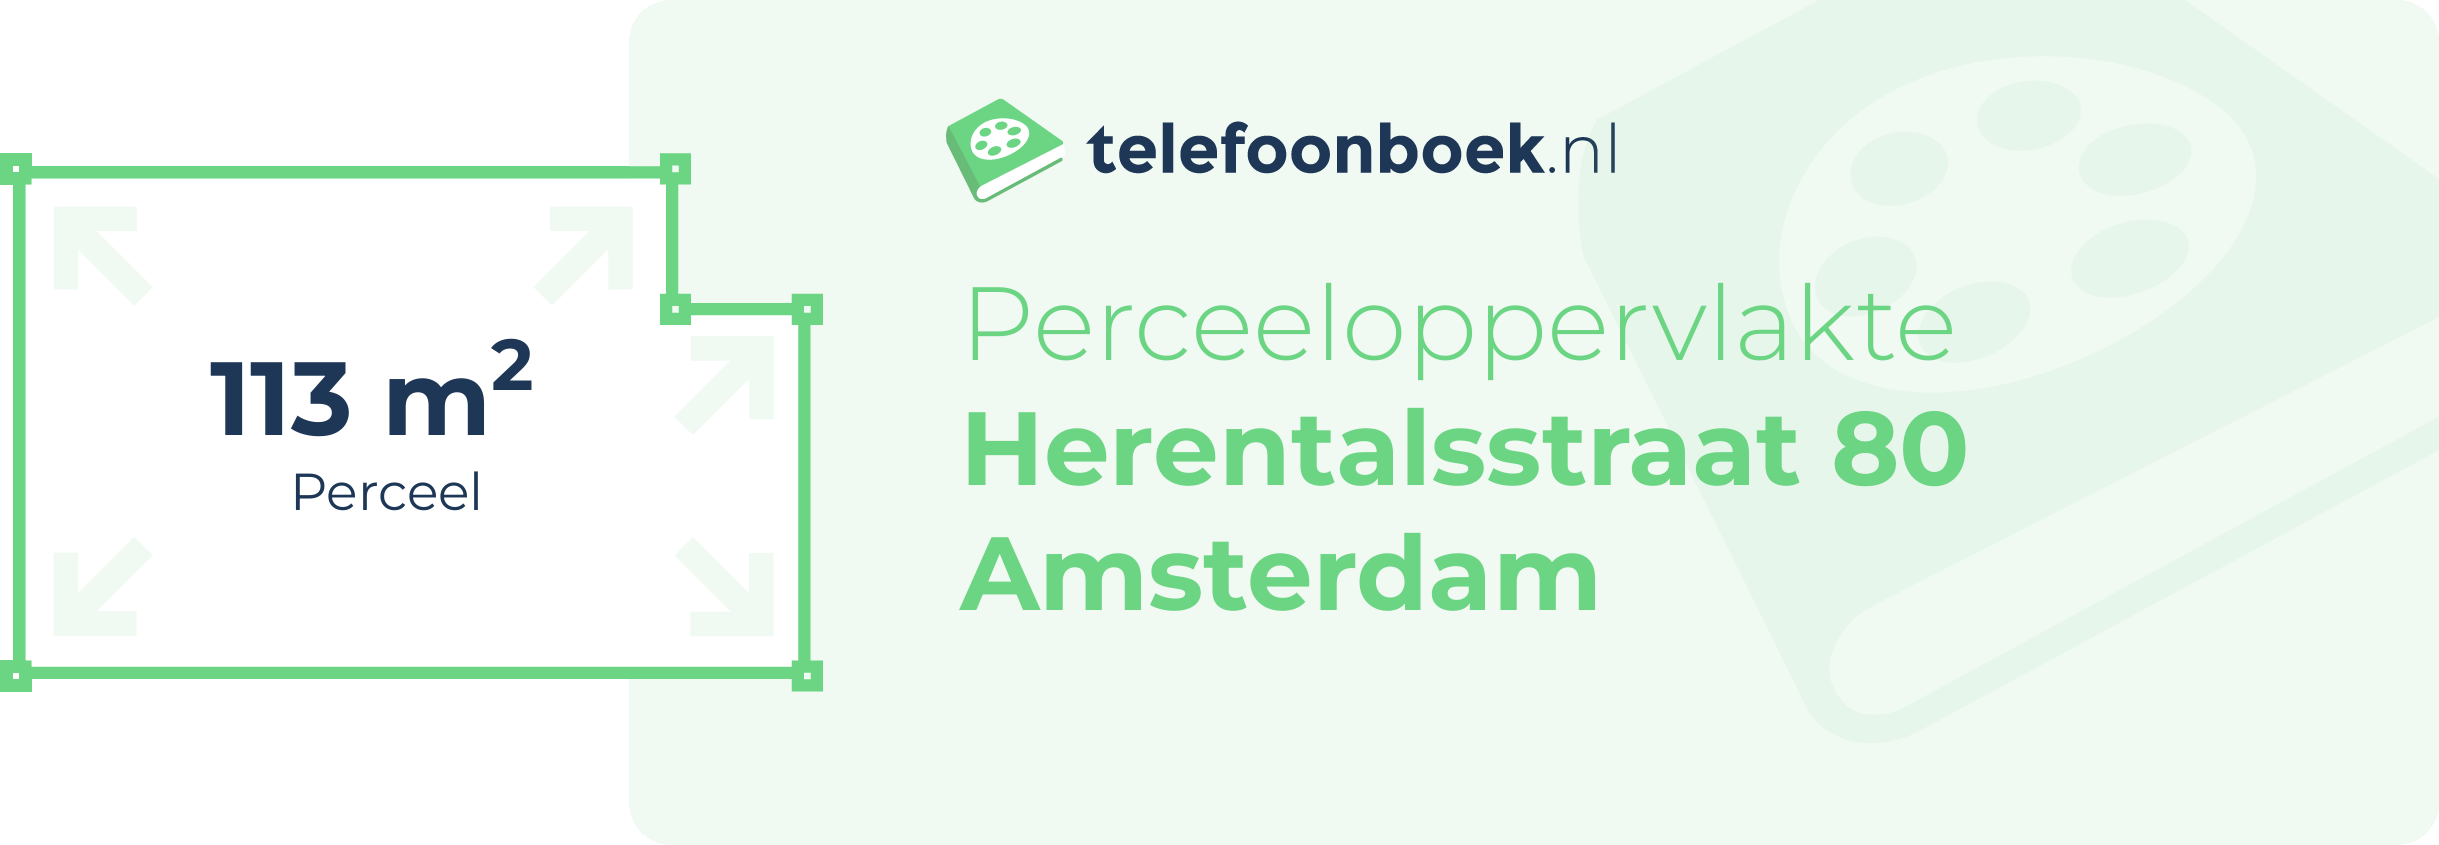 Perceeloppervlakte Herentalsstraat 80 Amsterdam